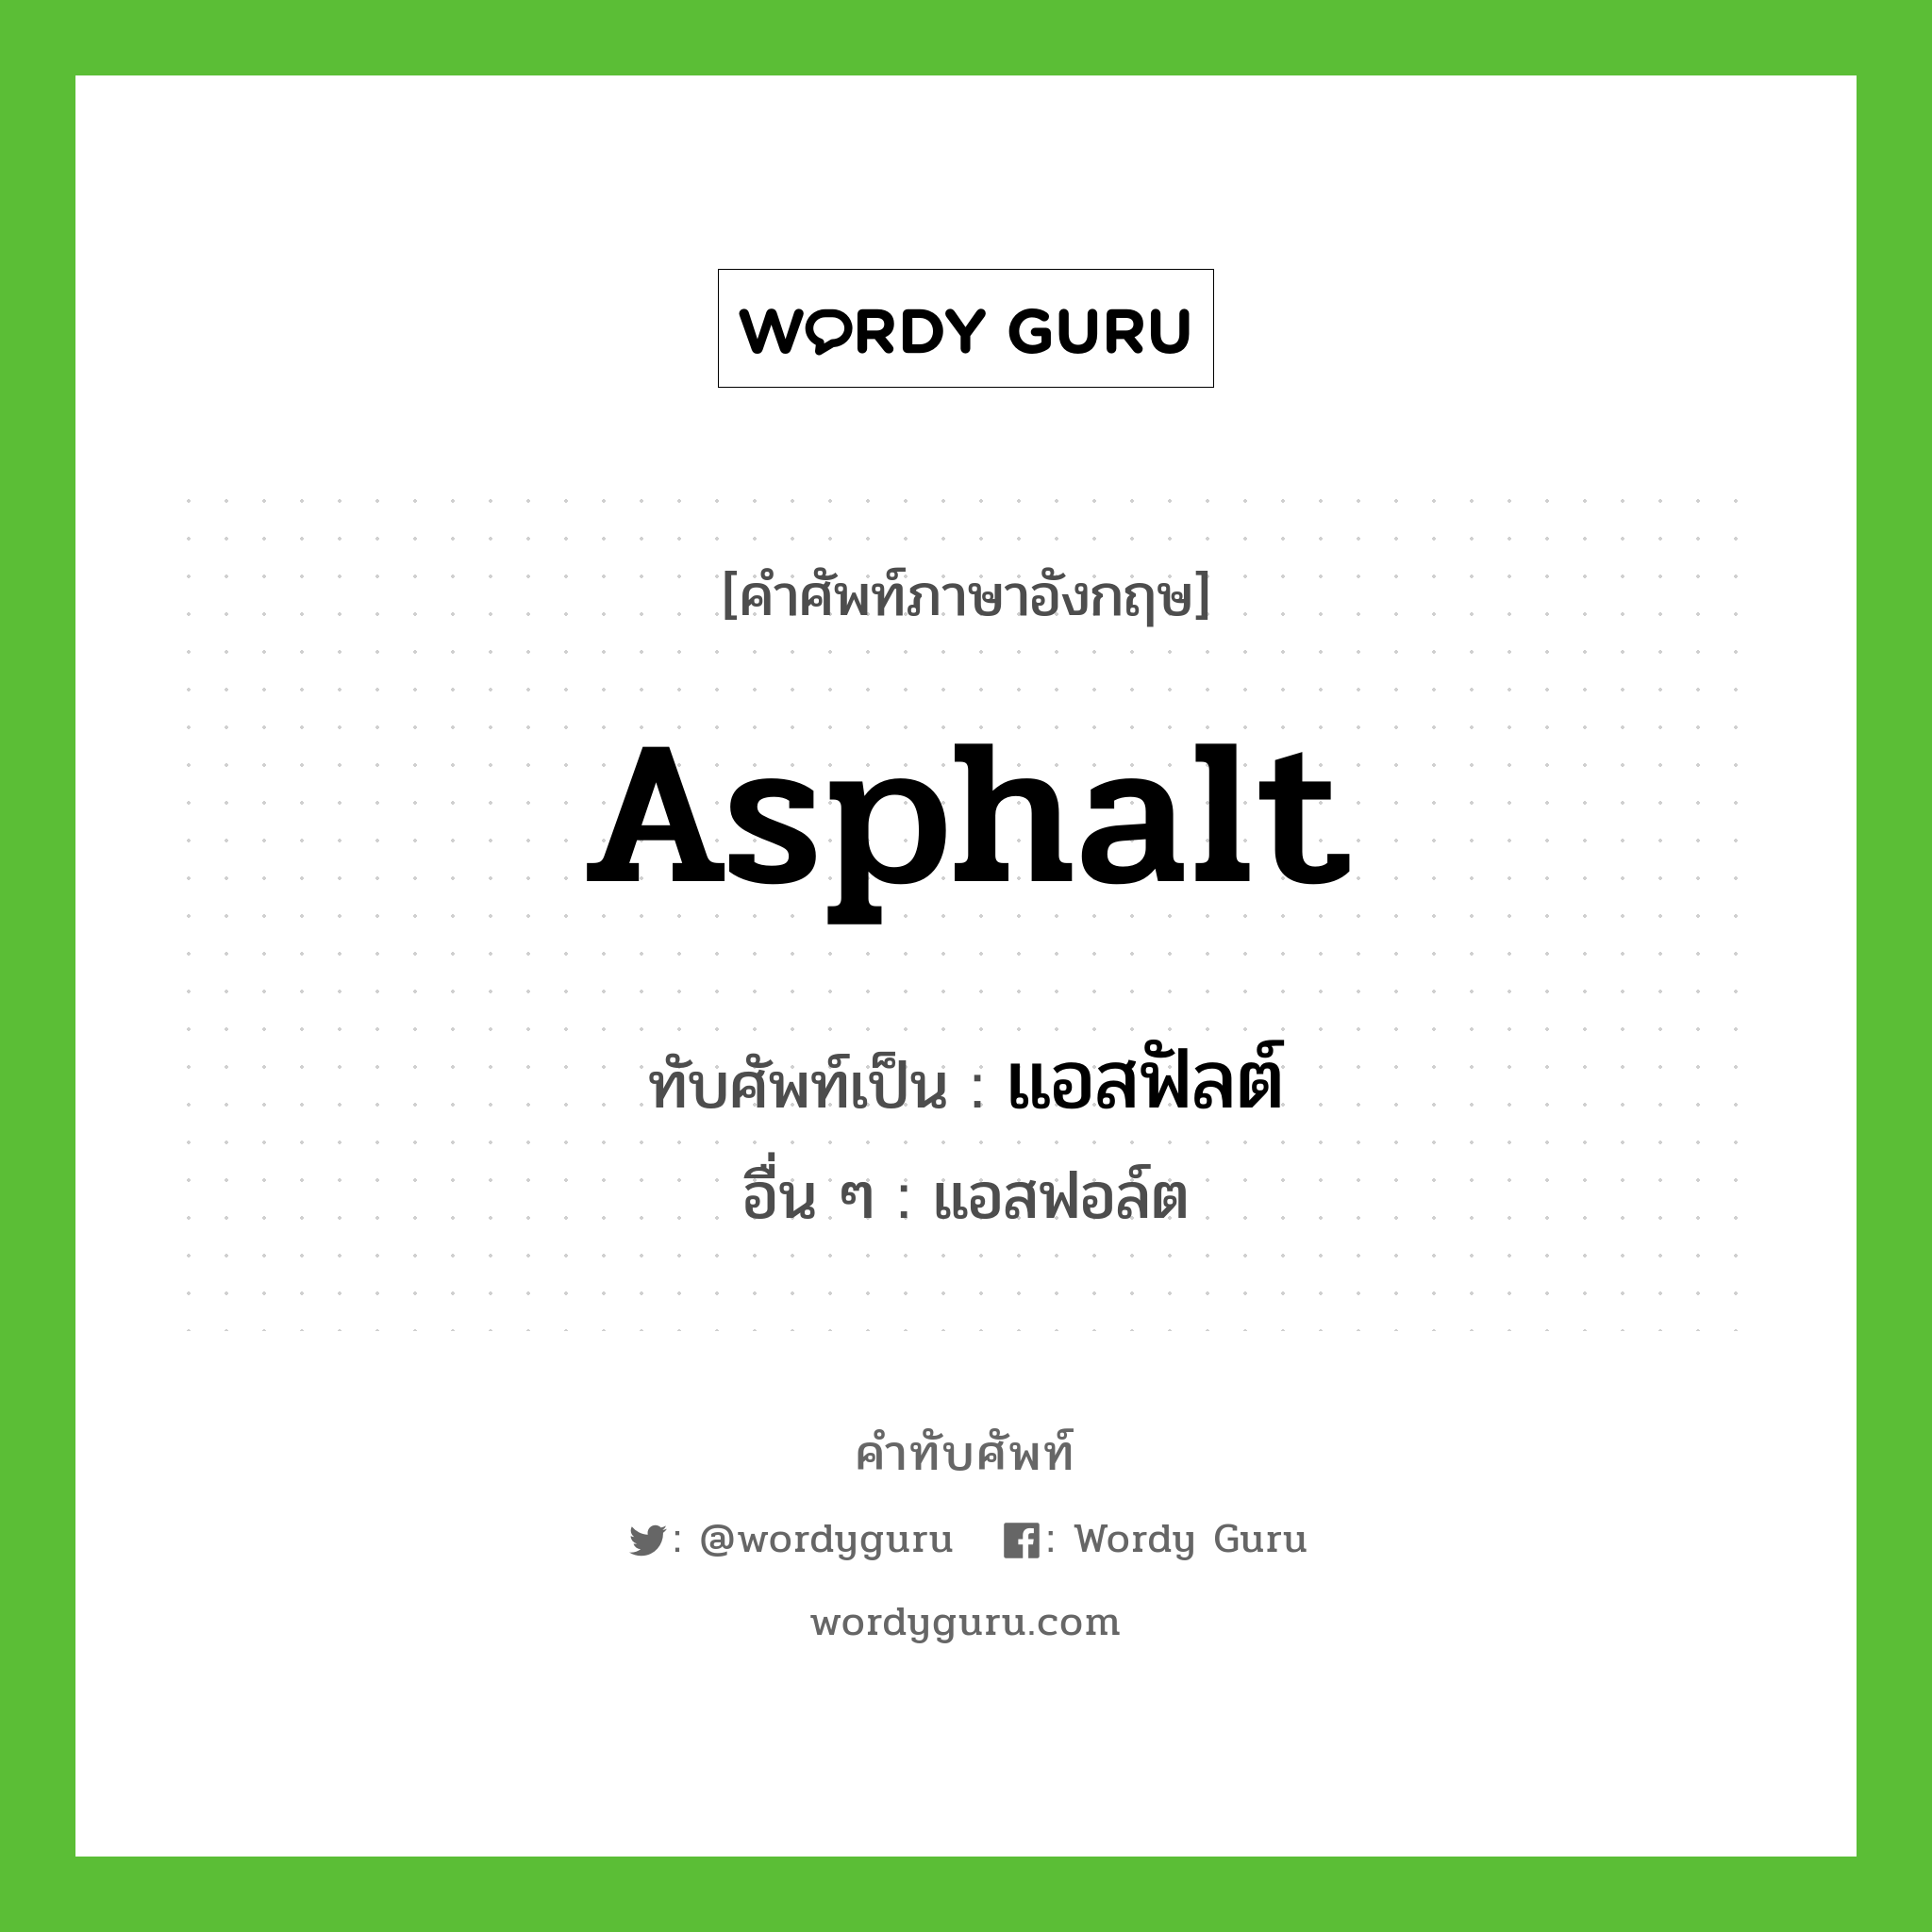 asphalt เขียนเป็นคำไทยว่าอะไร?, คำศัพท์ภาษาอังกฤษ asphalt ทับศัพท์เป็น แอสฟัลต์ อื่น ๆ แอสฟอล์ต